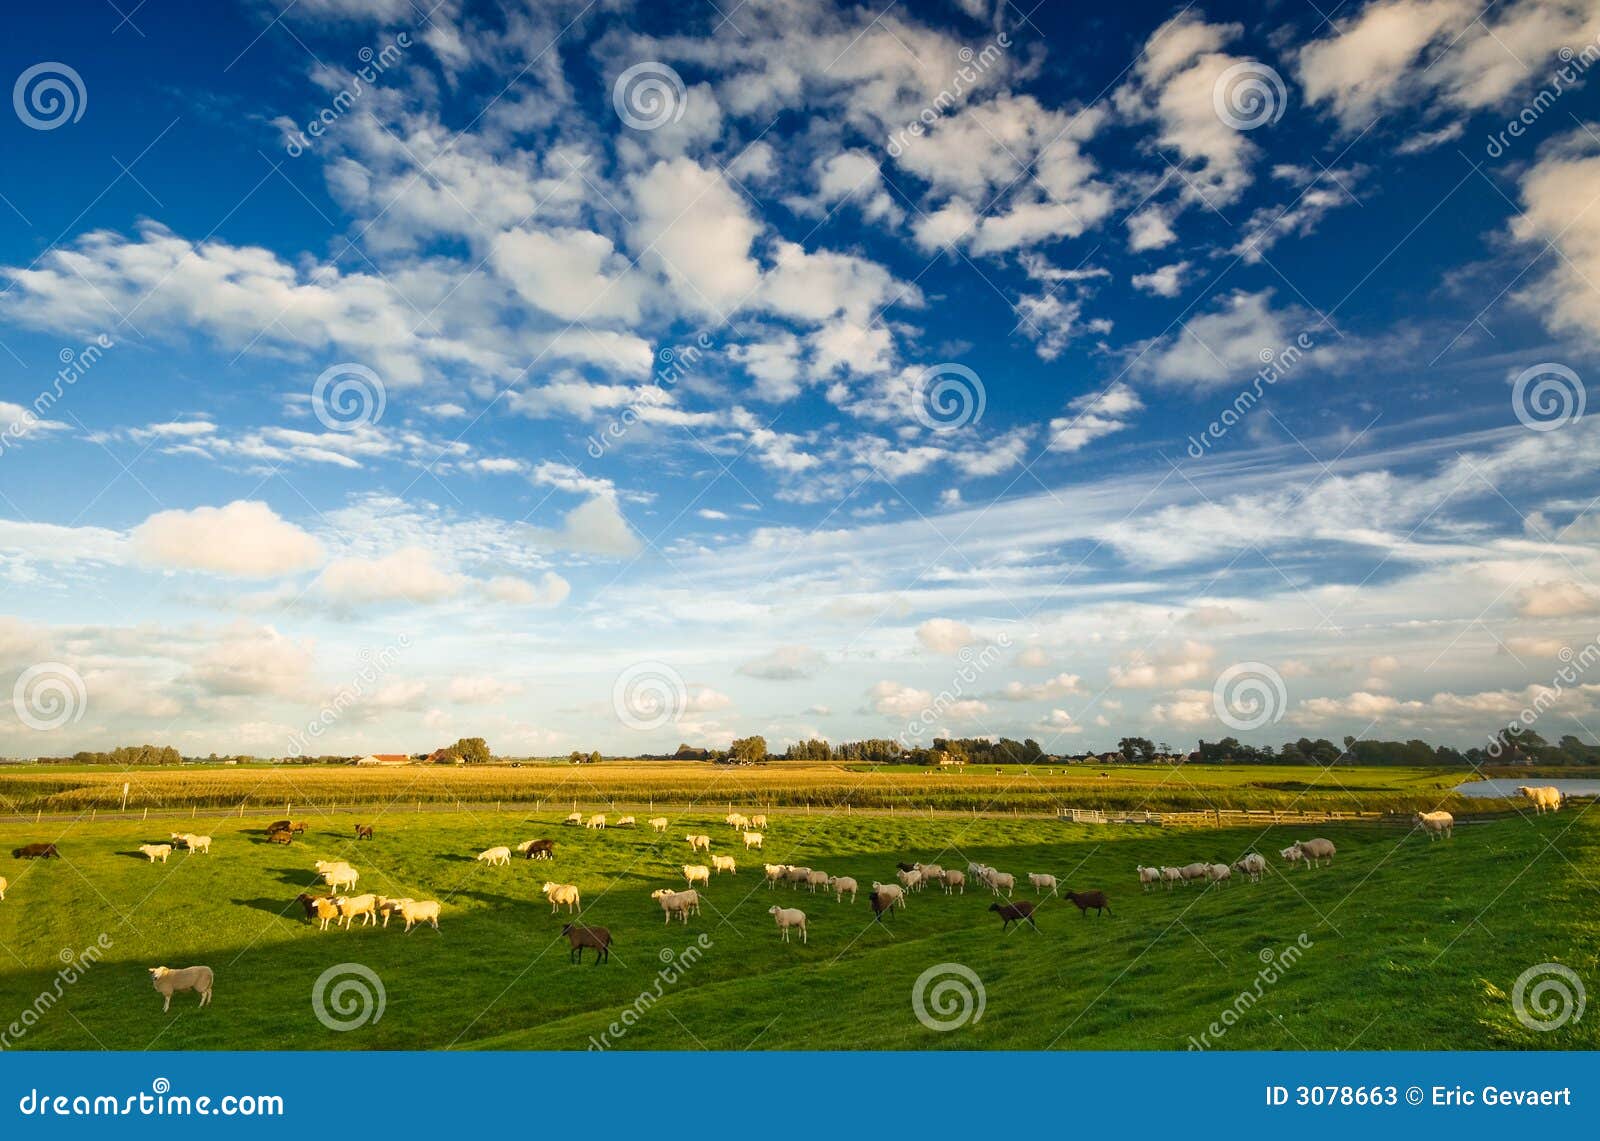 dutch farmland landscape